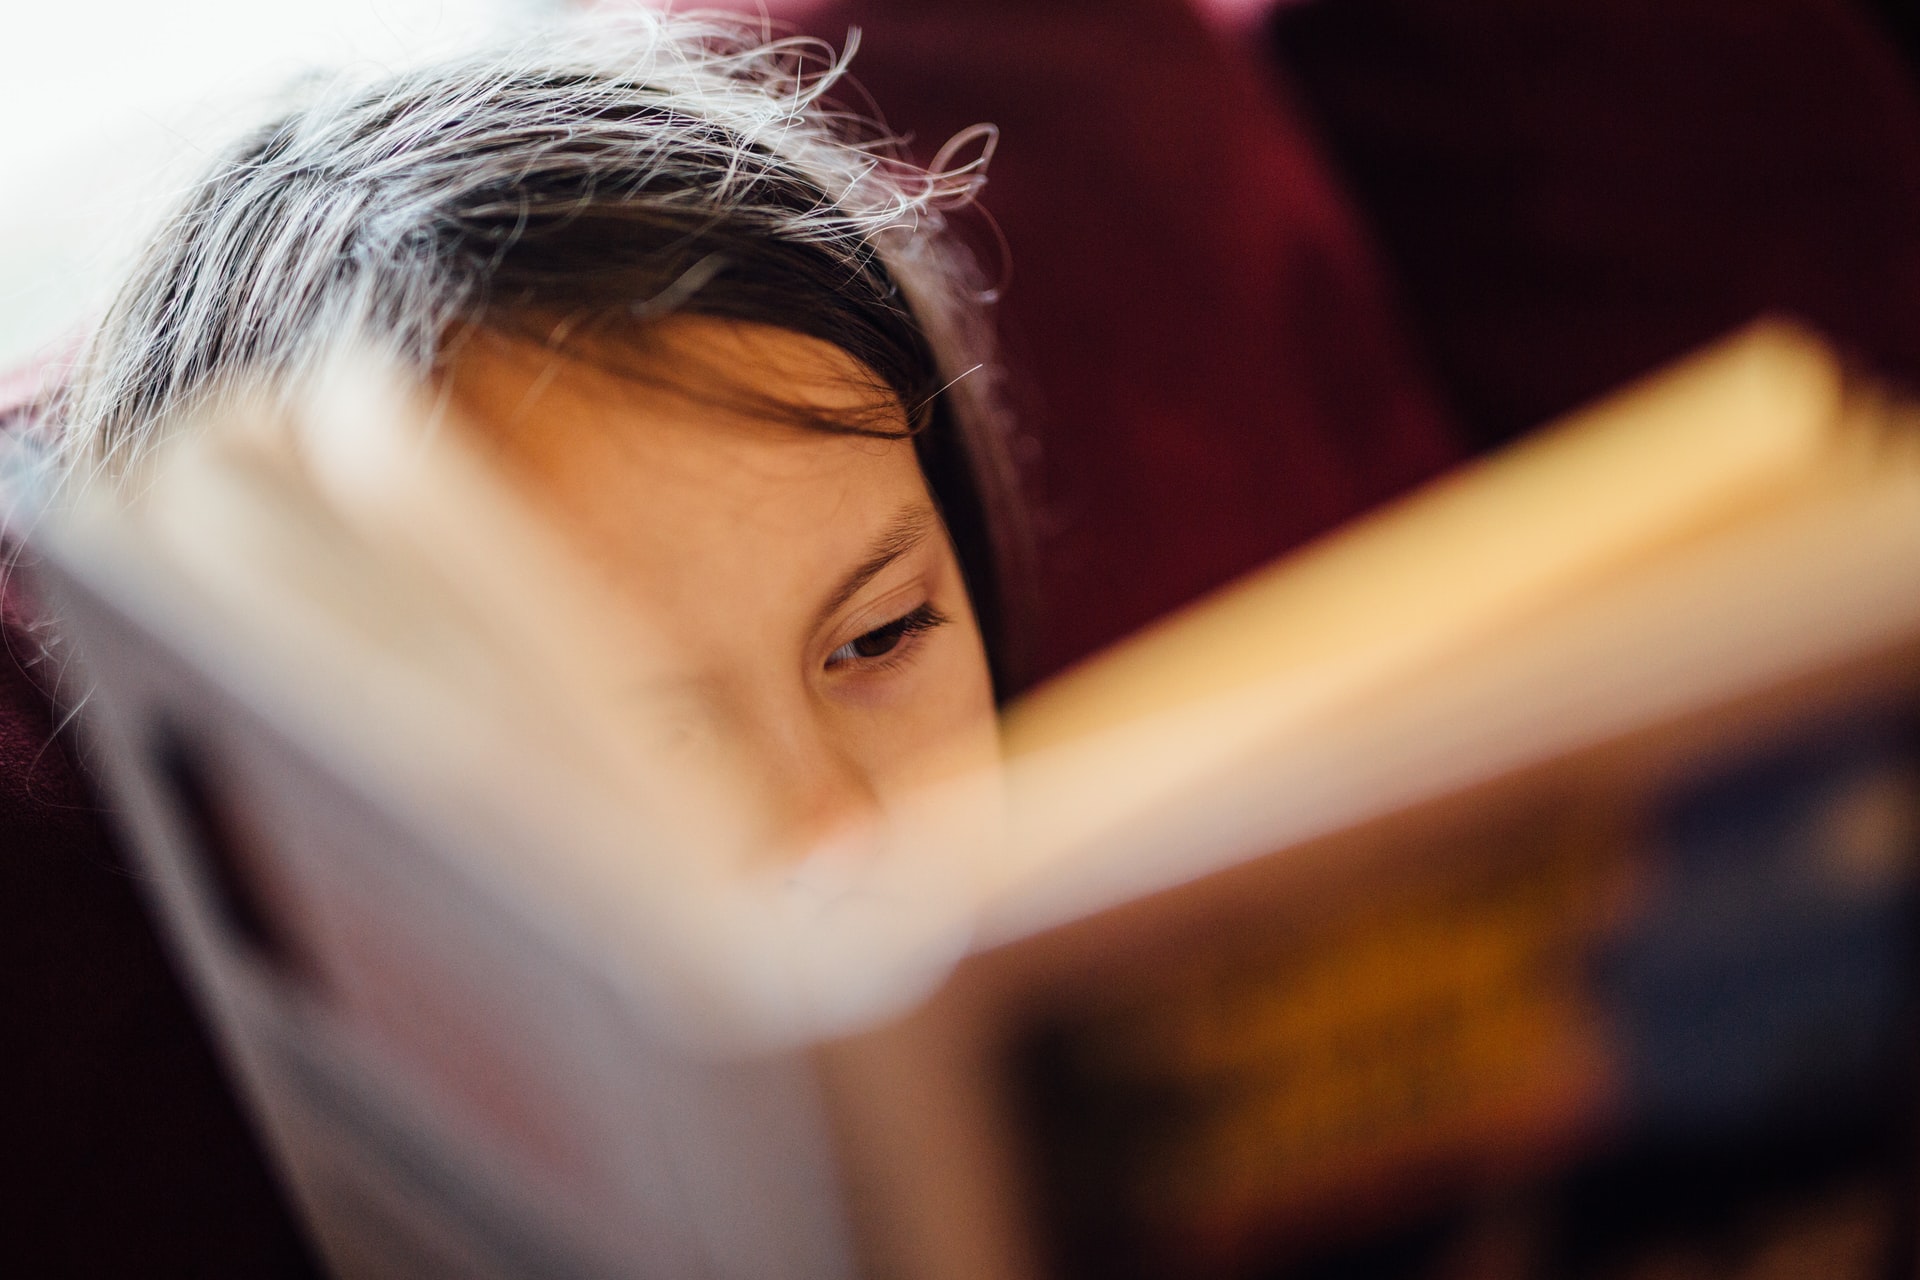 Ketahui 7 Cara Mengajari Anak Membaca Tanpa Mengeja, Yuk! 9